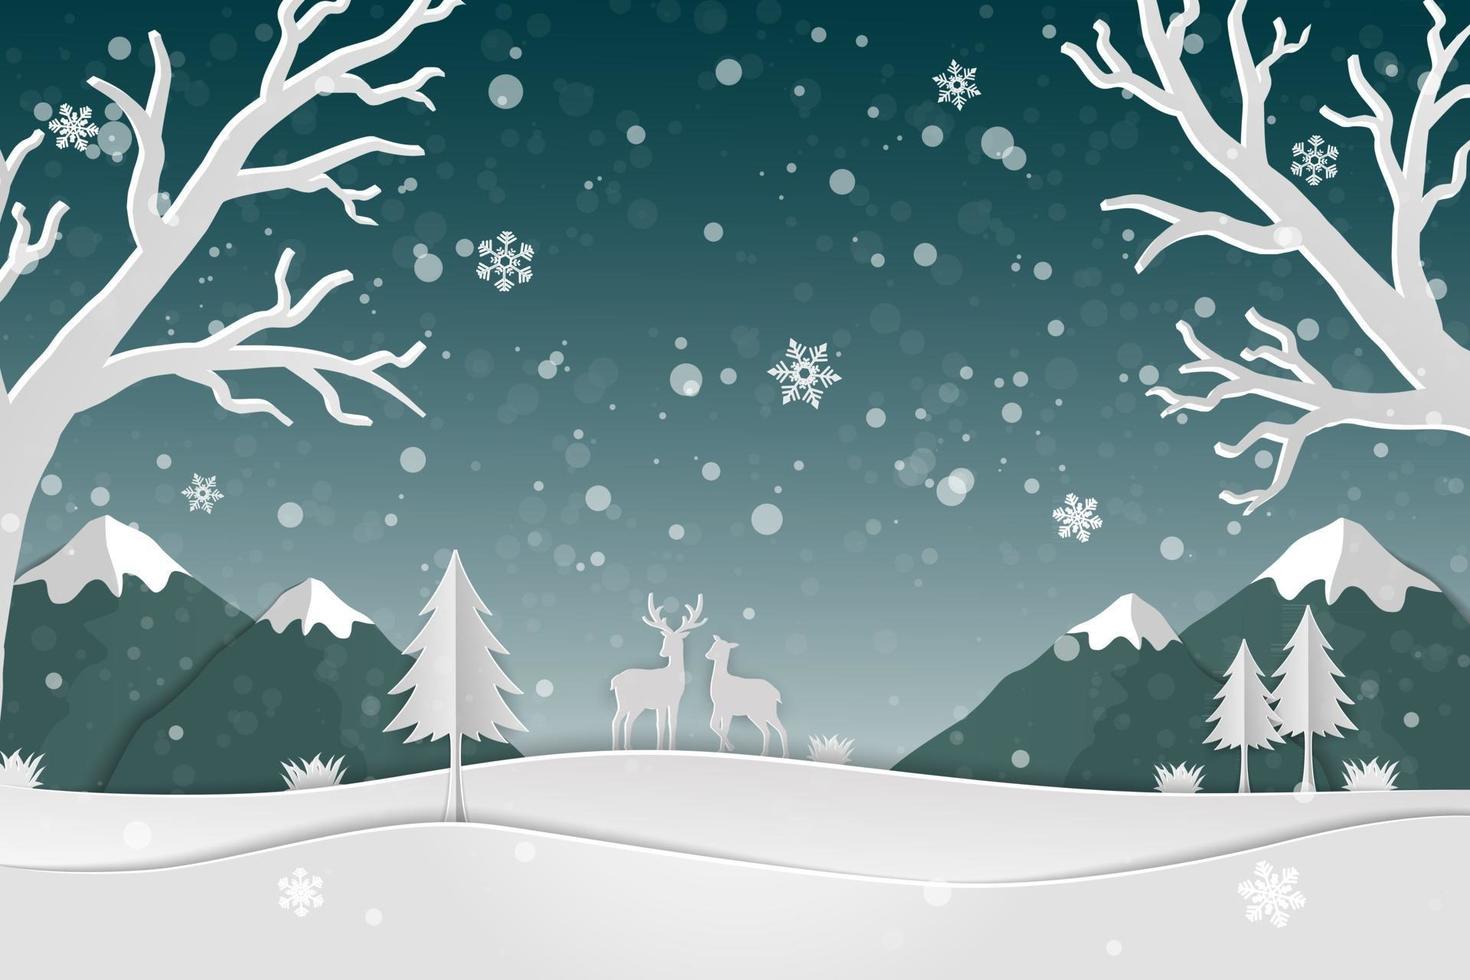 papier kunst landschap met hertenfamilie en sneeuwvlokken in het bos iconen van winterseizoen abstracte achtergrond vector